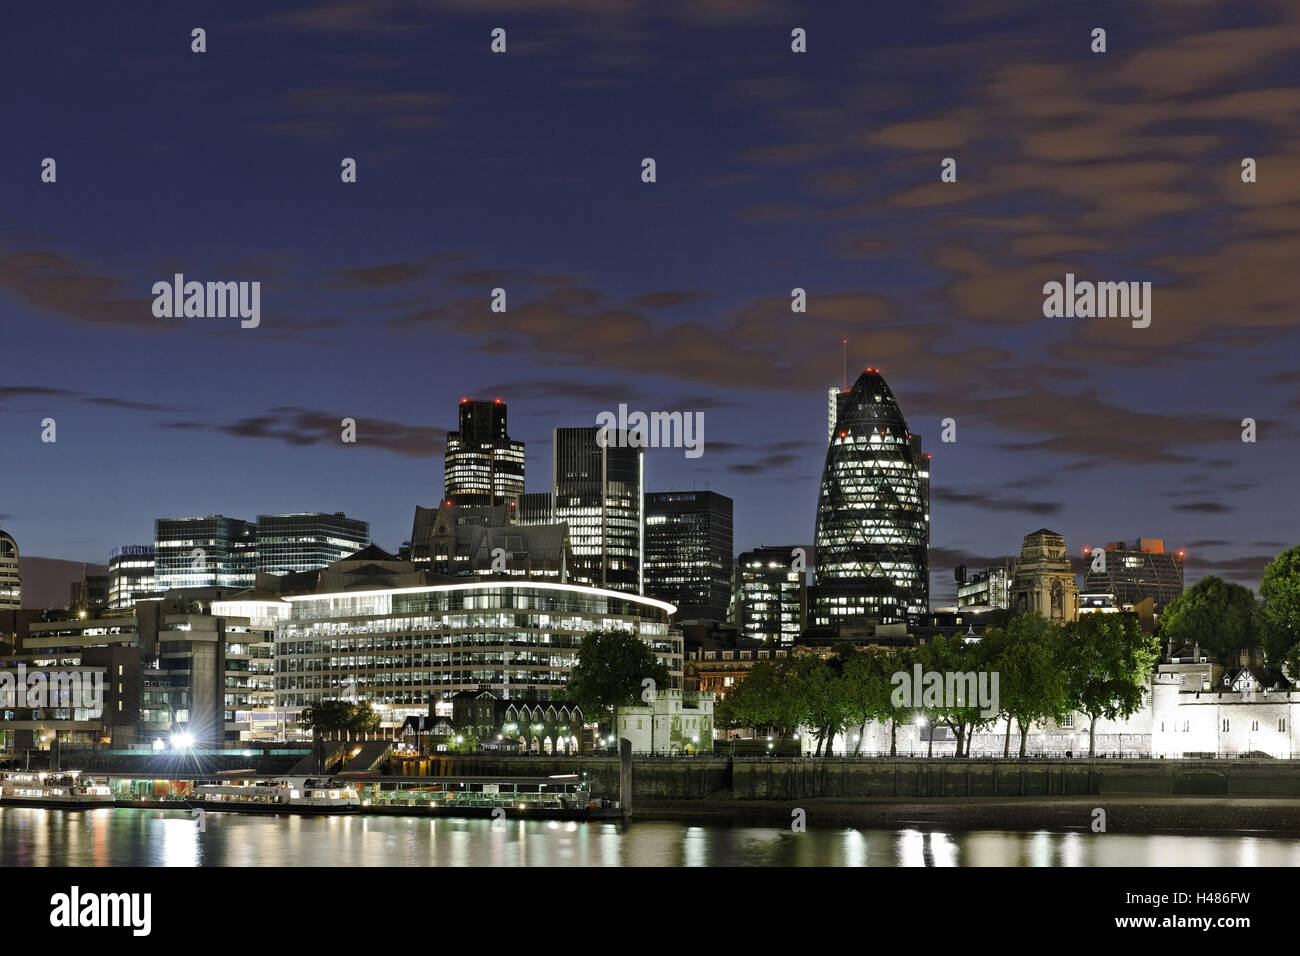 Les toits de la ville de Londres avec la Tamise, la tour Swiss Re, crépuscule, rive sud de la Tamise, London Bridge, London, England, UK, Banque D'Images